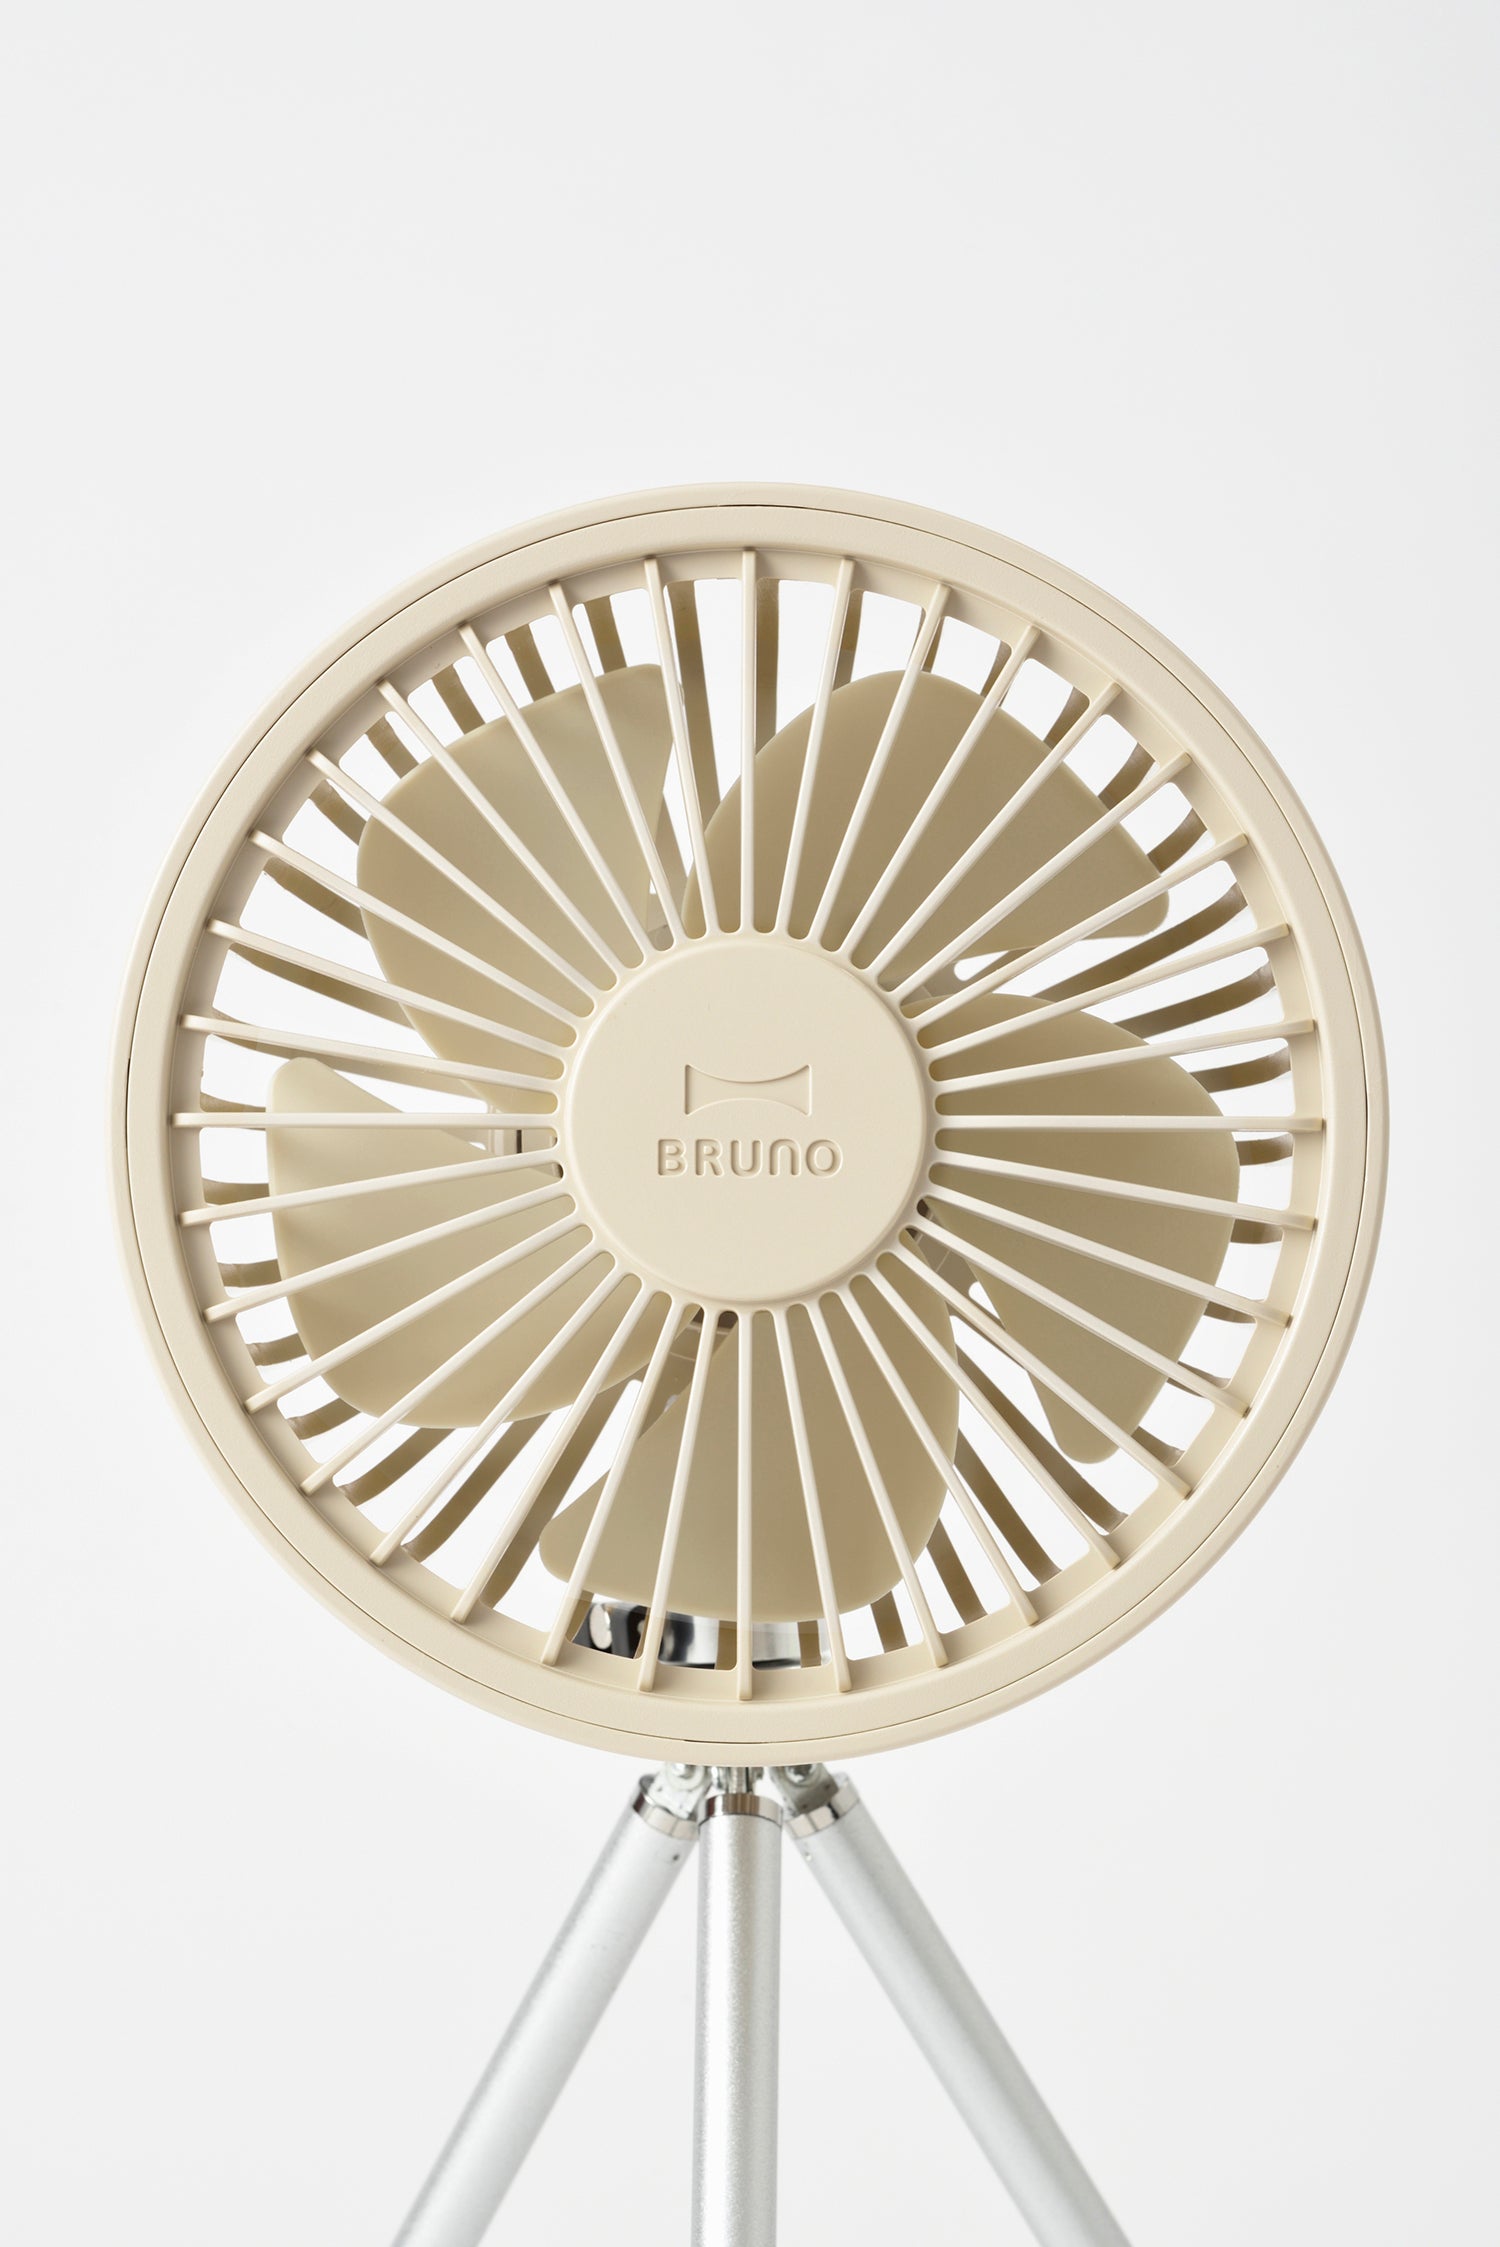 BRUNO Portable Tripod Fan - Ivory BDE062-IV